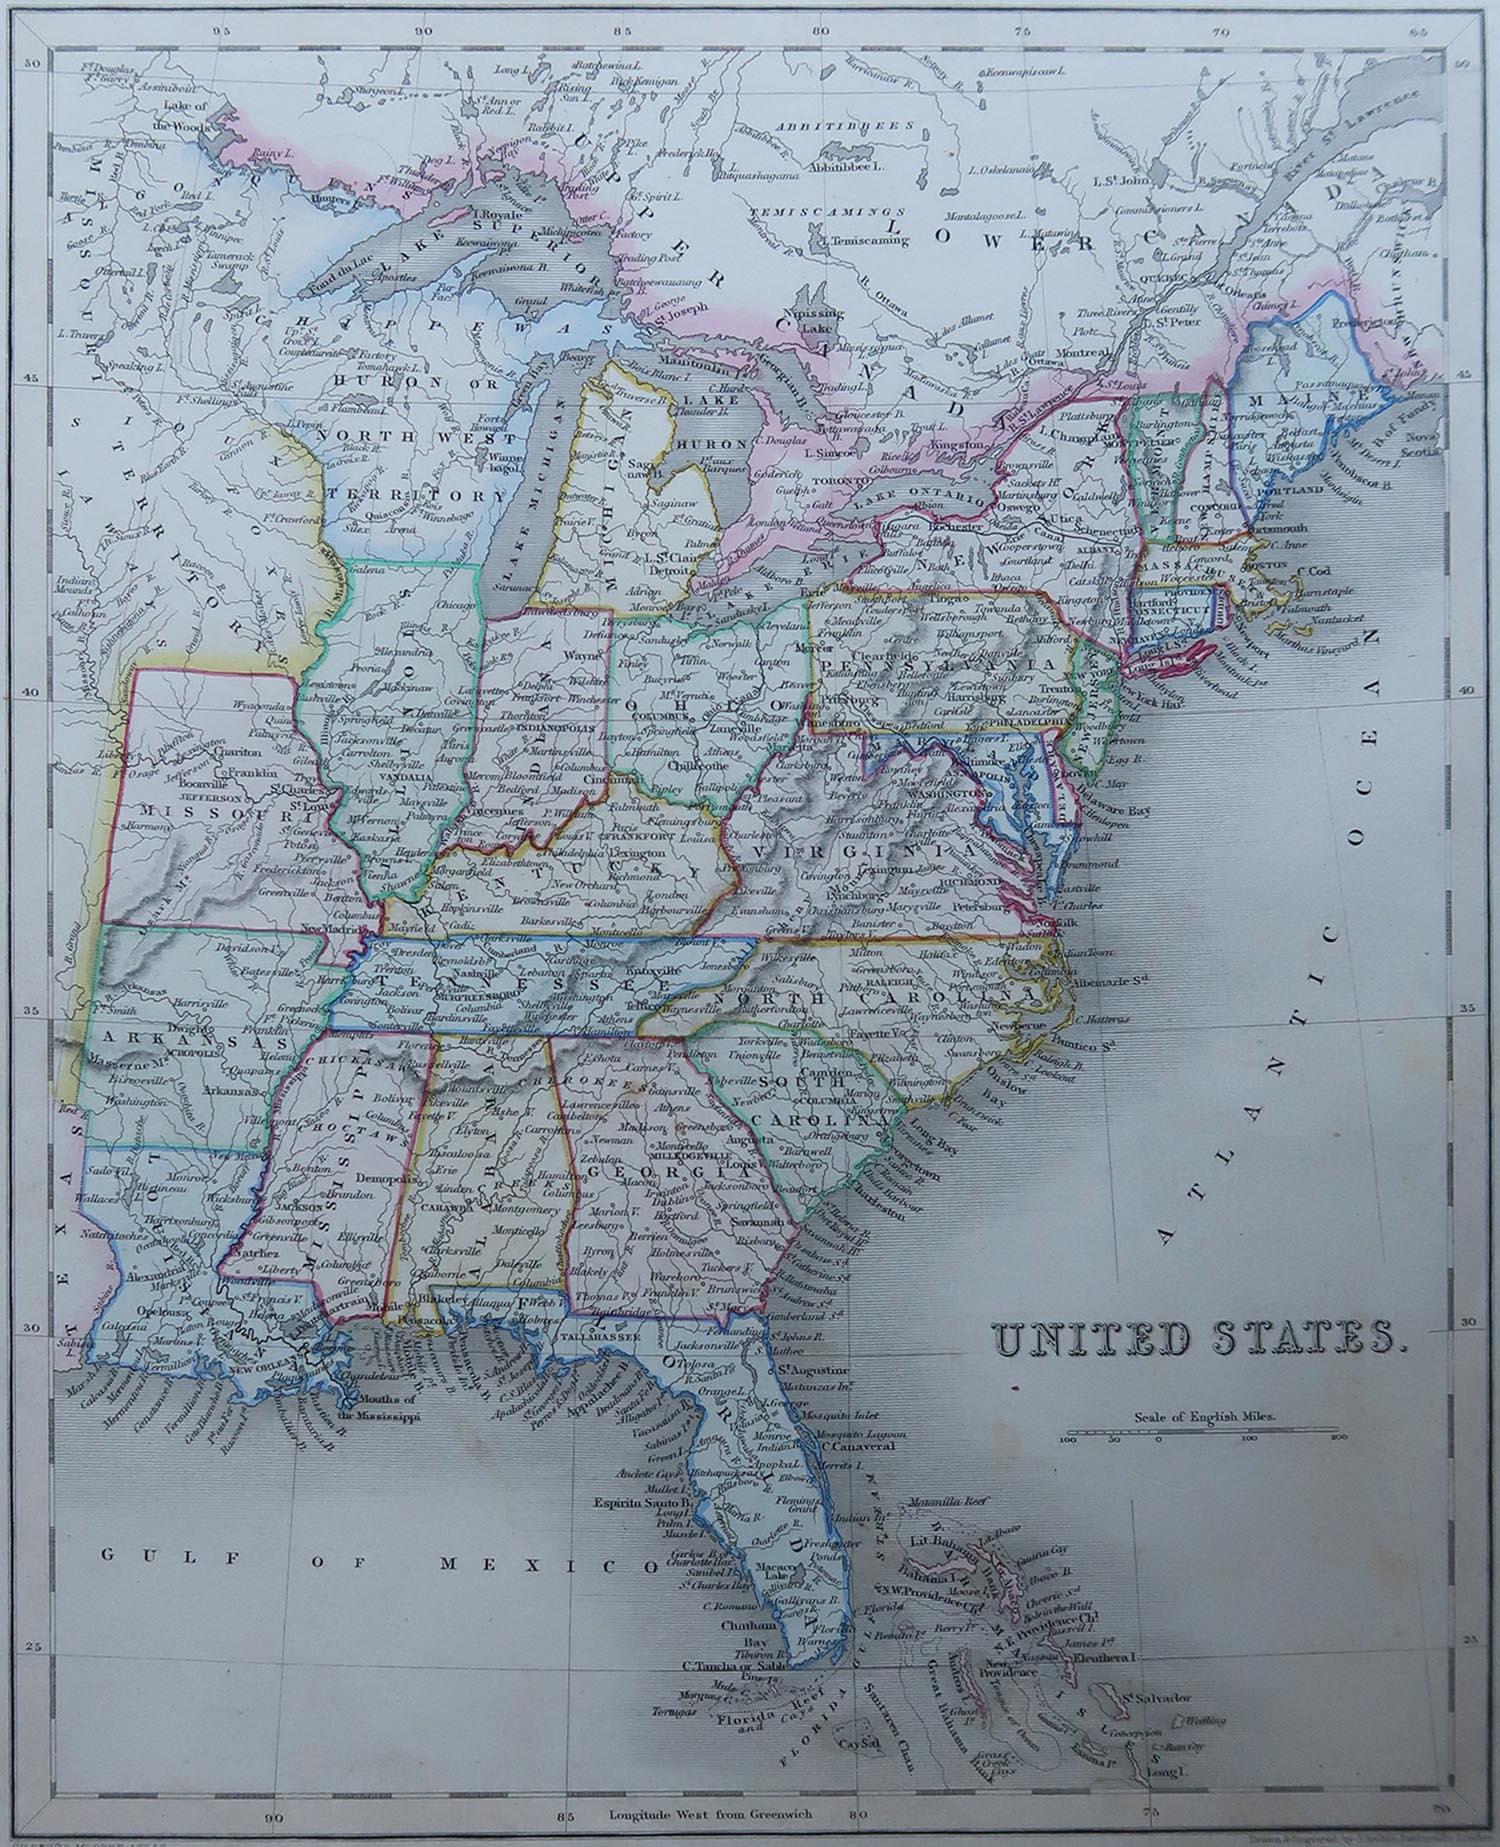 Grande carte des États-Unis

Dessiné et gravé par Archer

Publié par Grattan et Gilbert. 1843

Couleur originale 

Non encadré.



